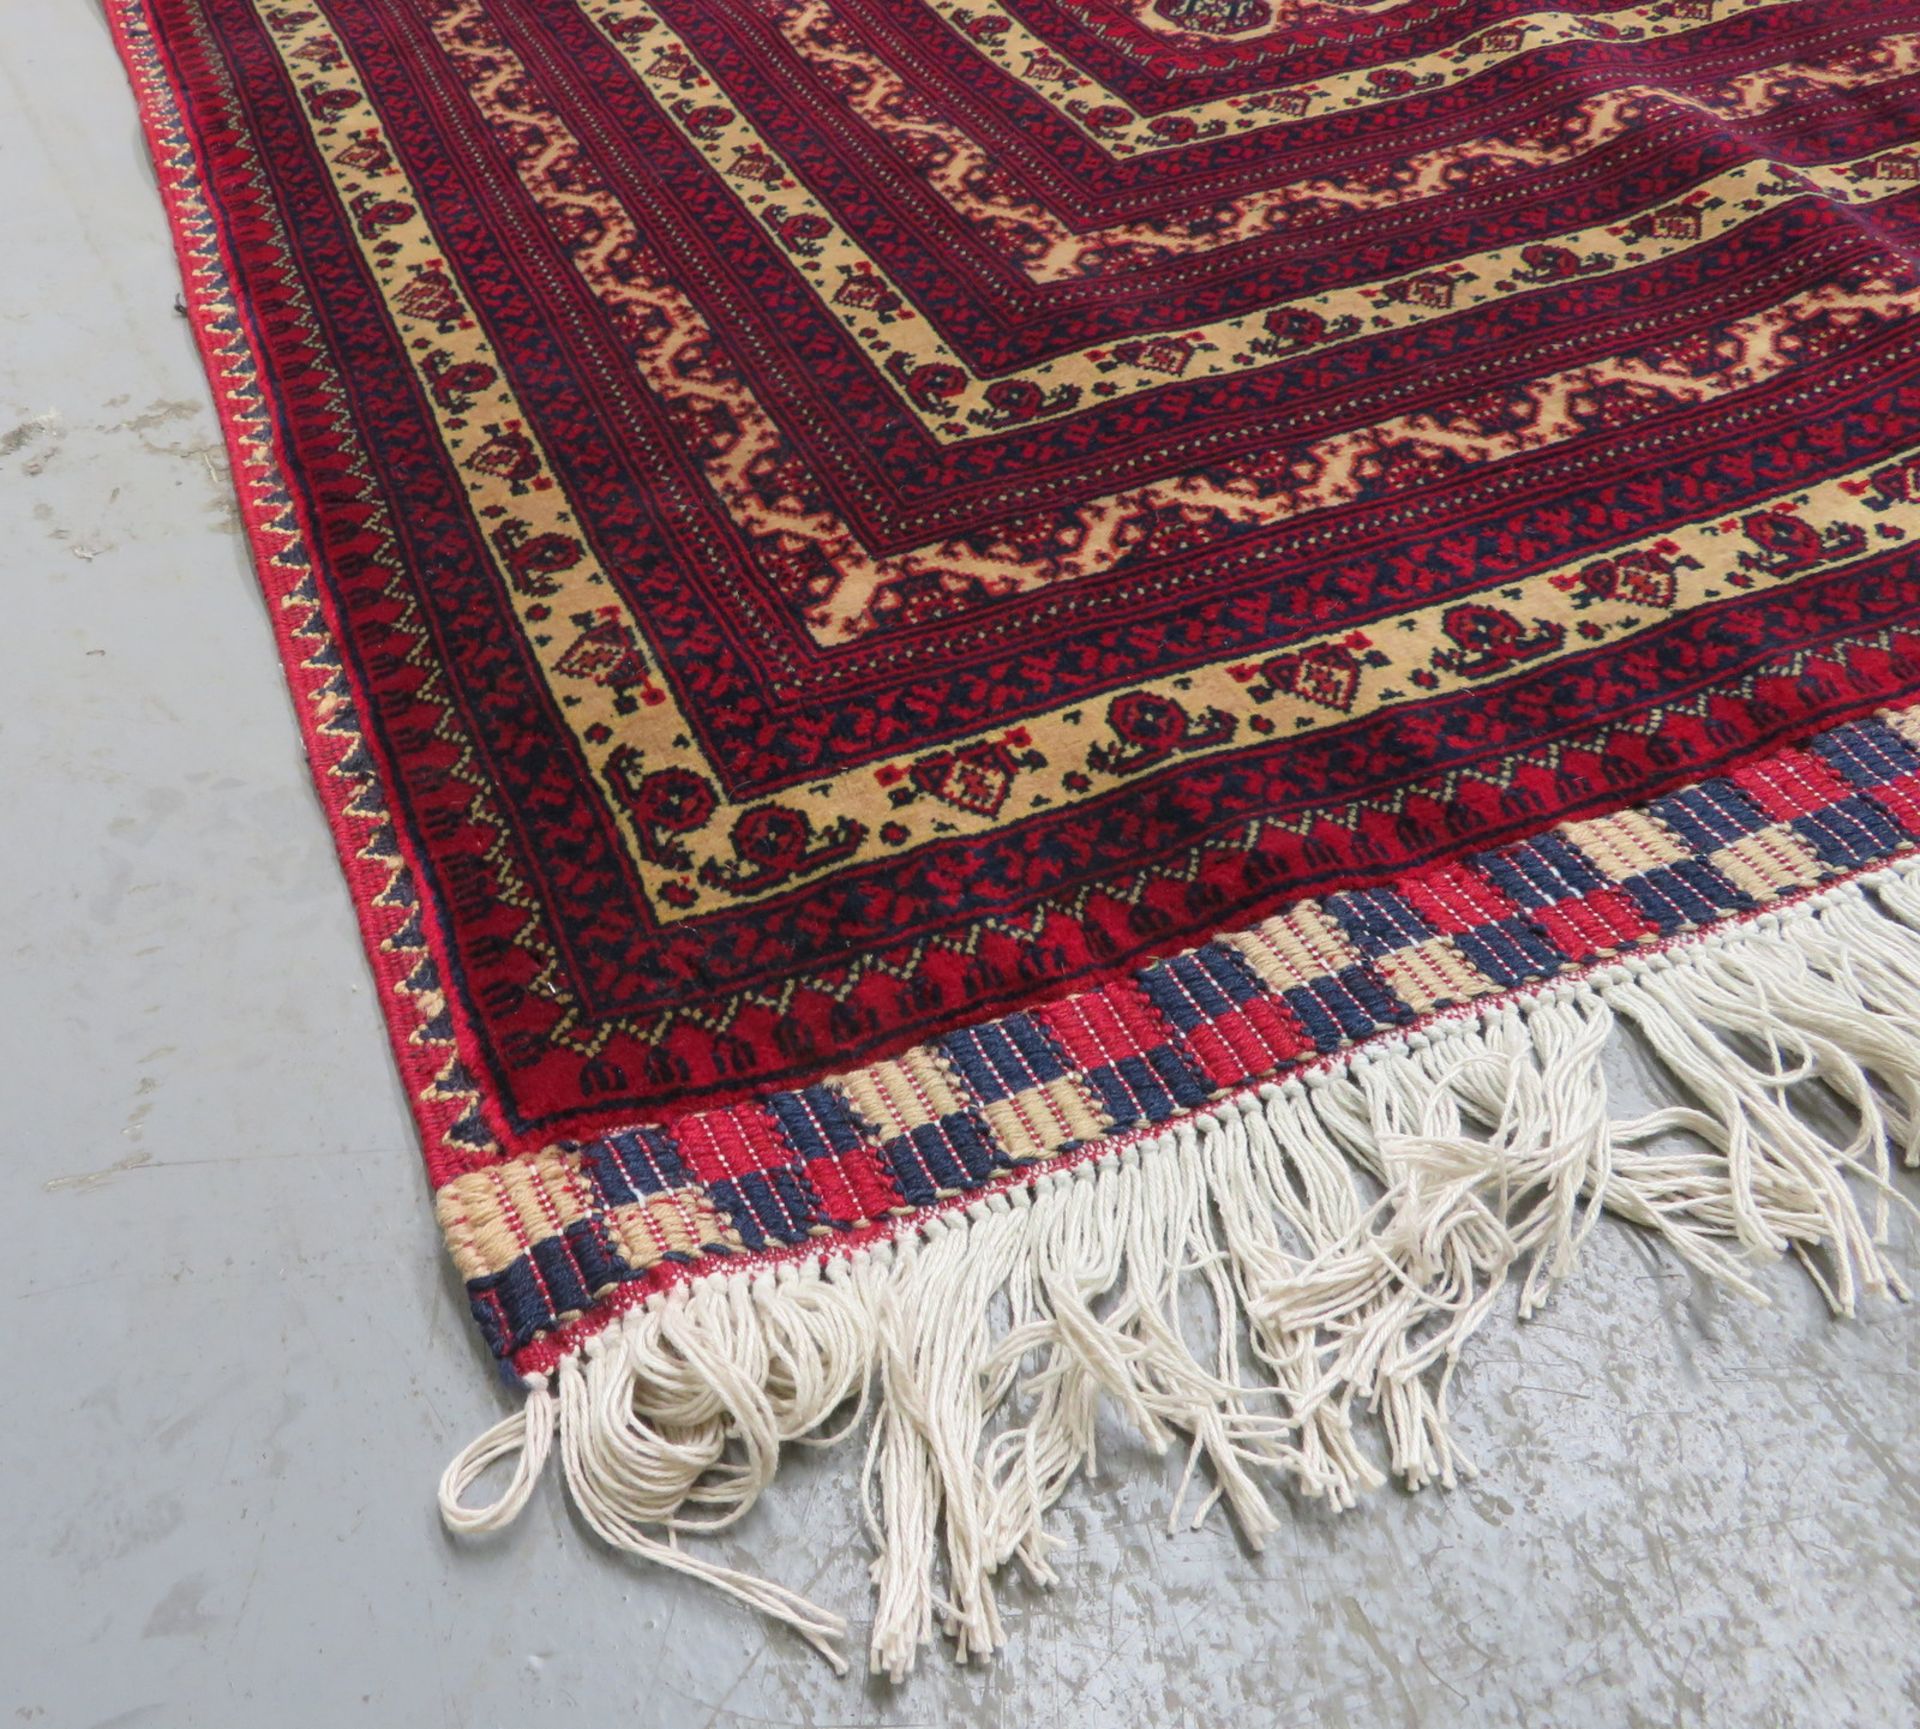 Khal Mohammadi 'Khawaja Roshnai' Afghan rug measures 3.5m L x 2.5m W - Image 6 of 13